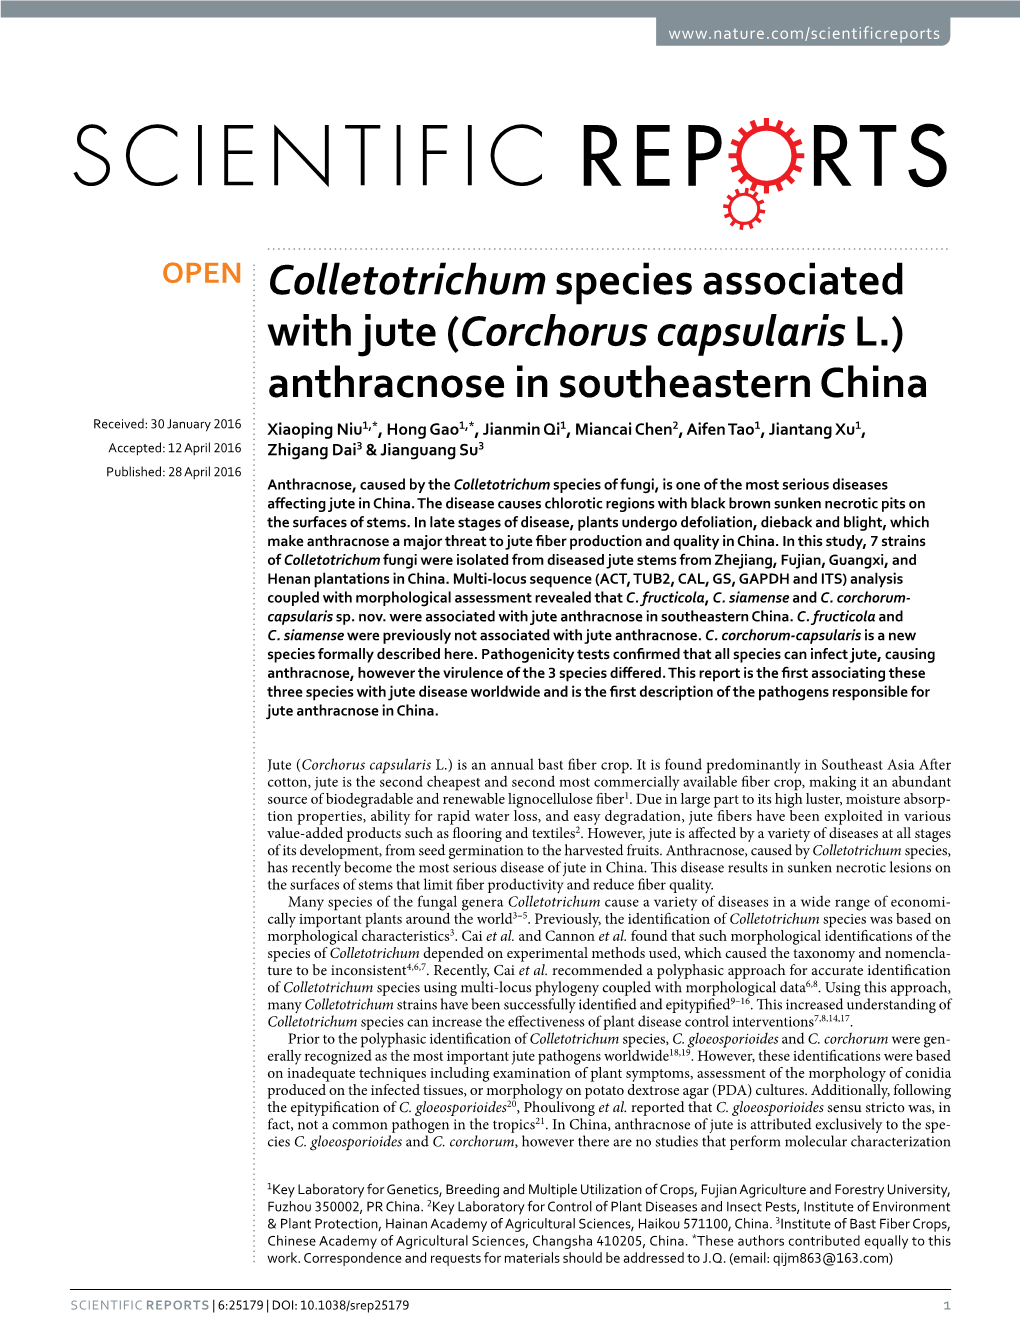 Colletotrichum Species Associated with Jute (Corchorus Capsularis L